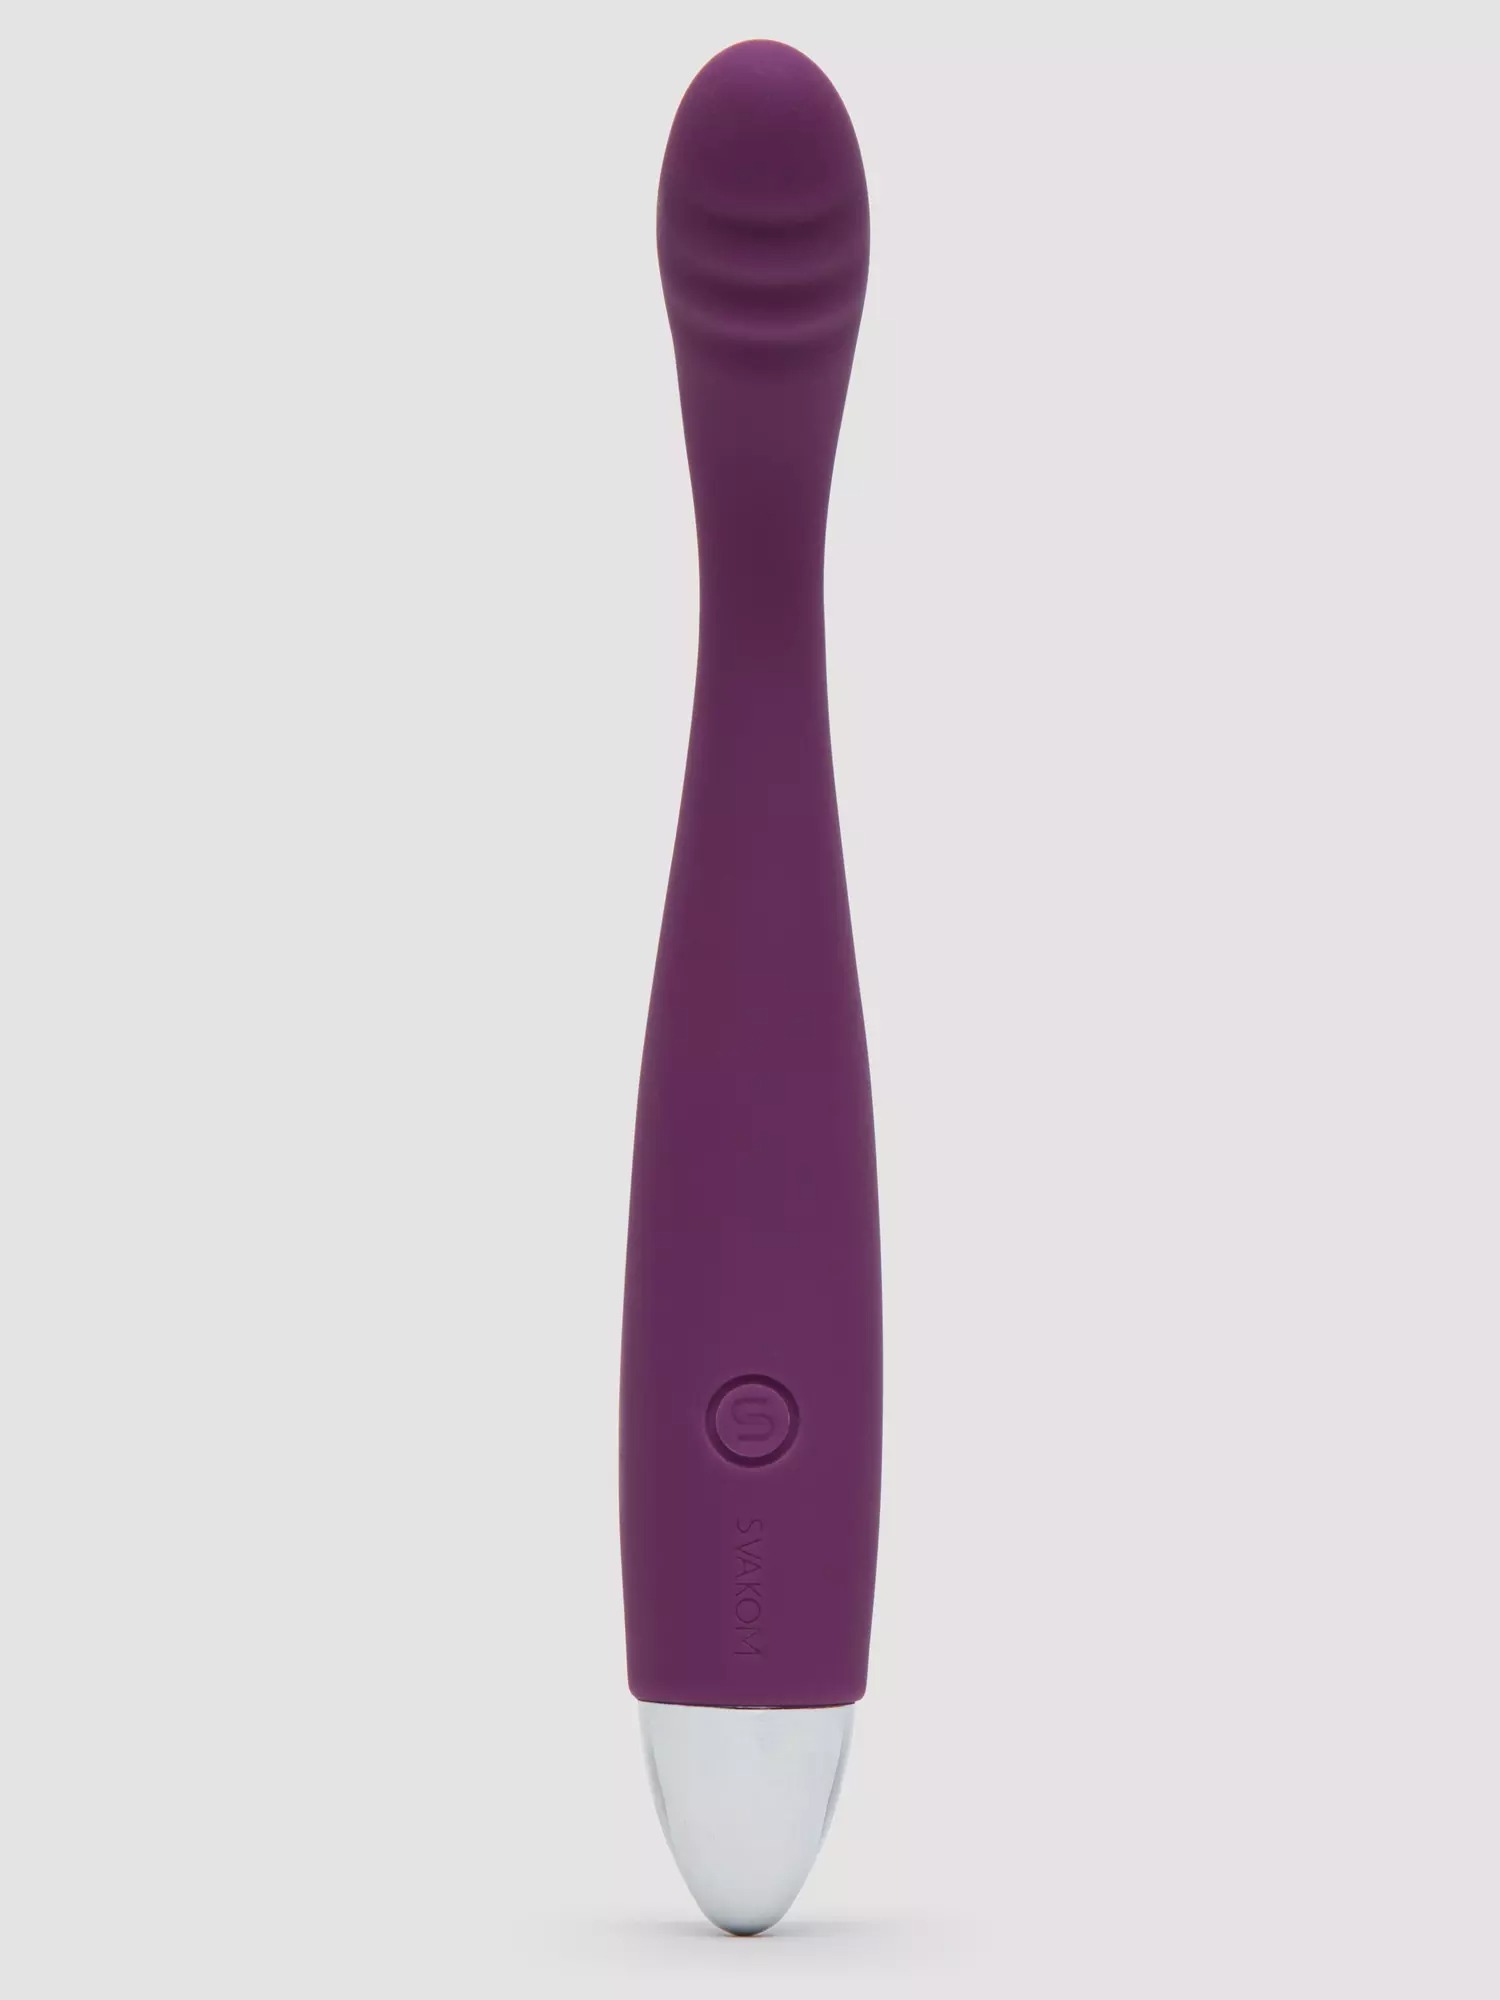 Svakom Cici Soft Flexible Curved Finger Vibrator. Slide 4